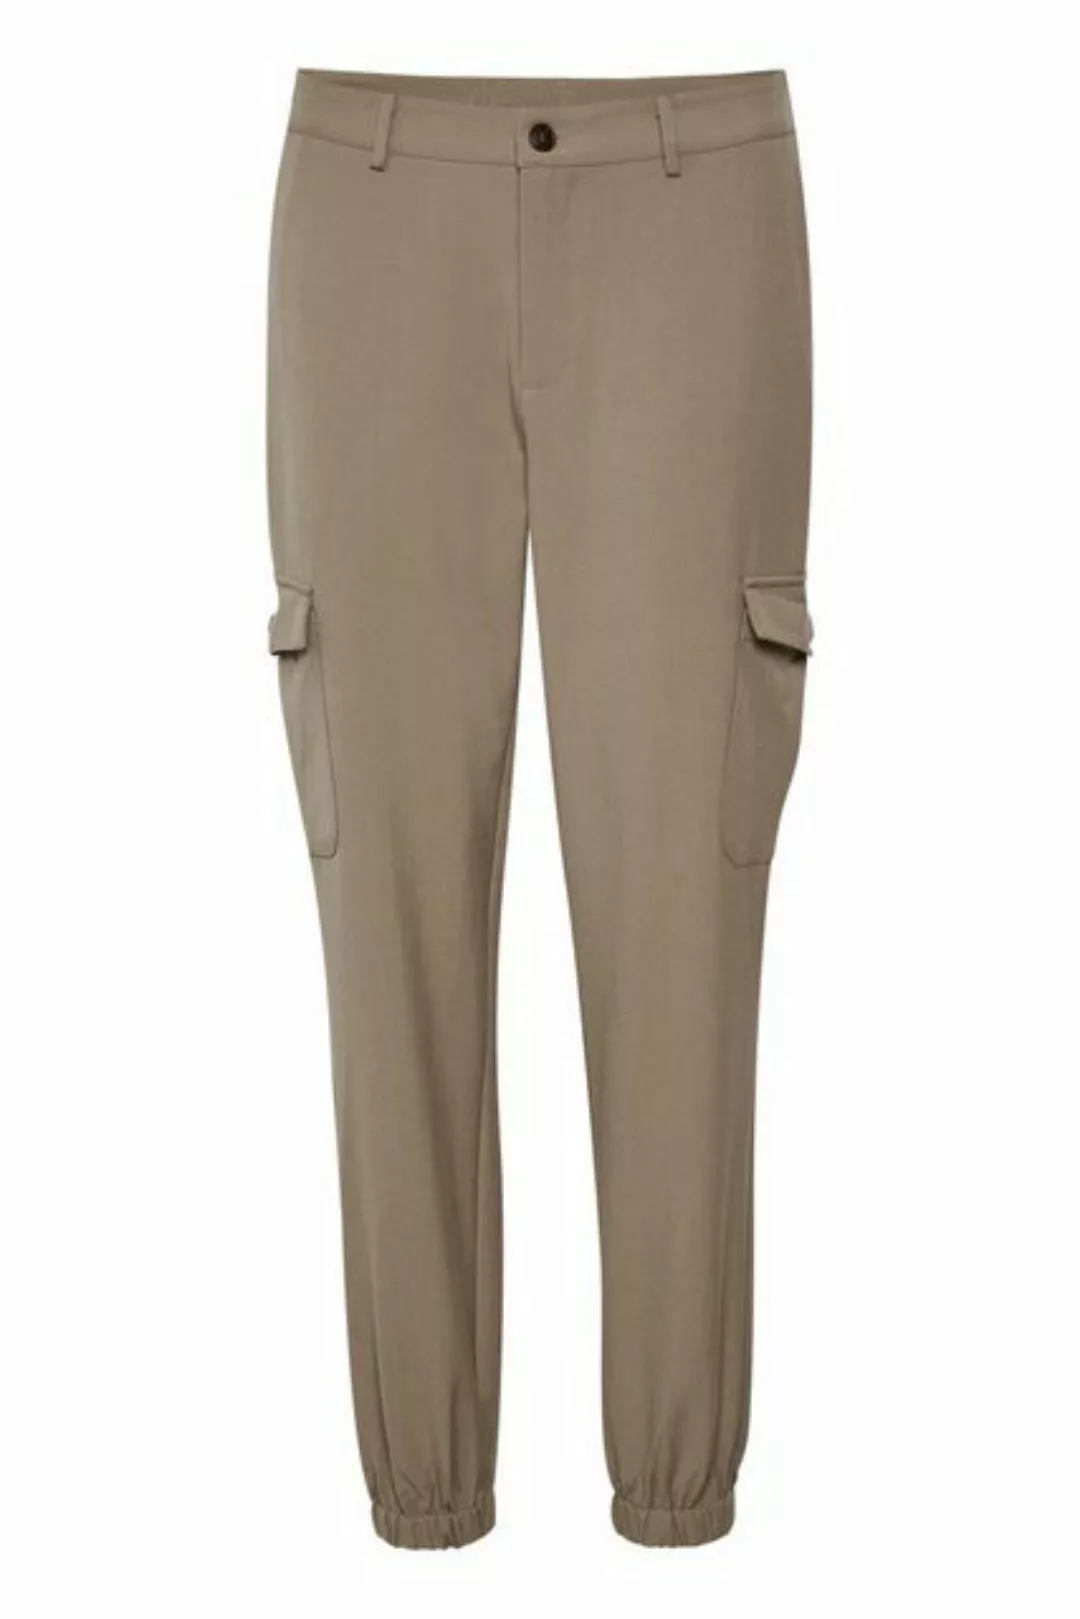 KAFFE Anzughose Pants Suiting KAemma günstig online kaufen